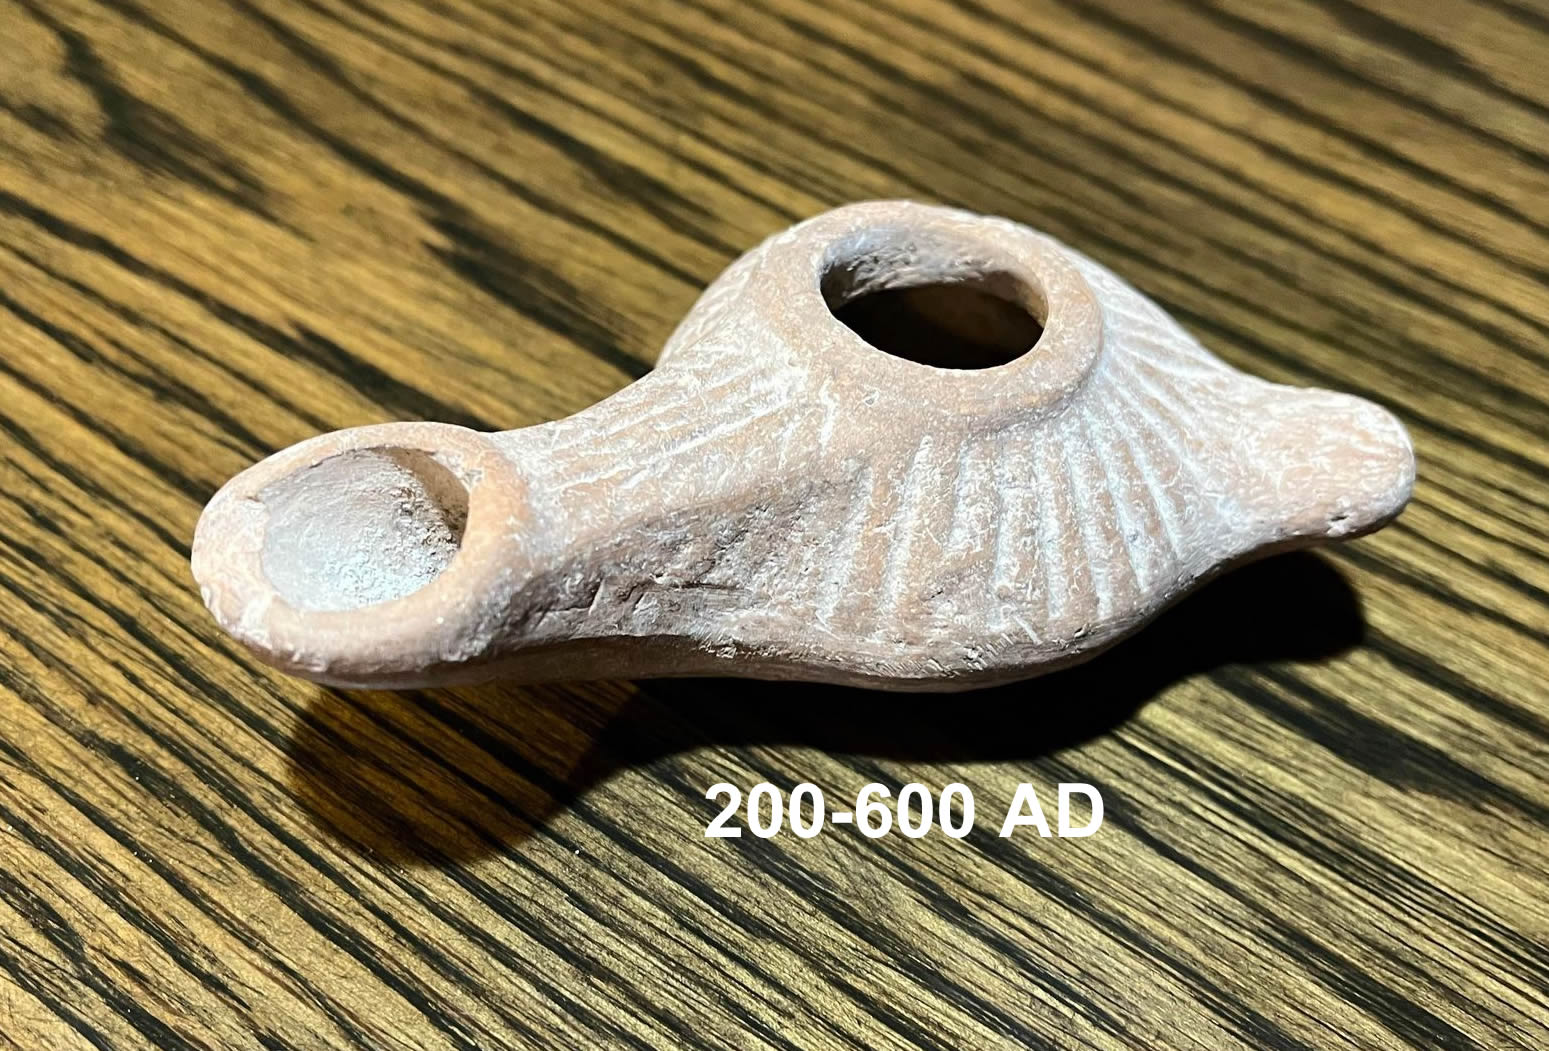 200-600 AD oil lamp